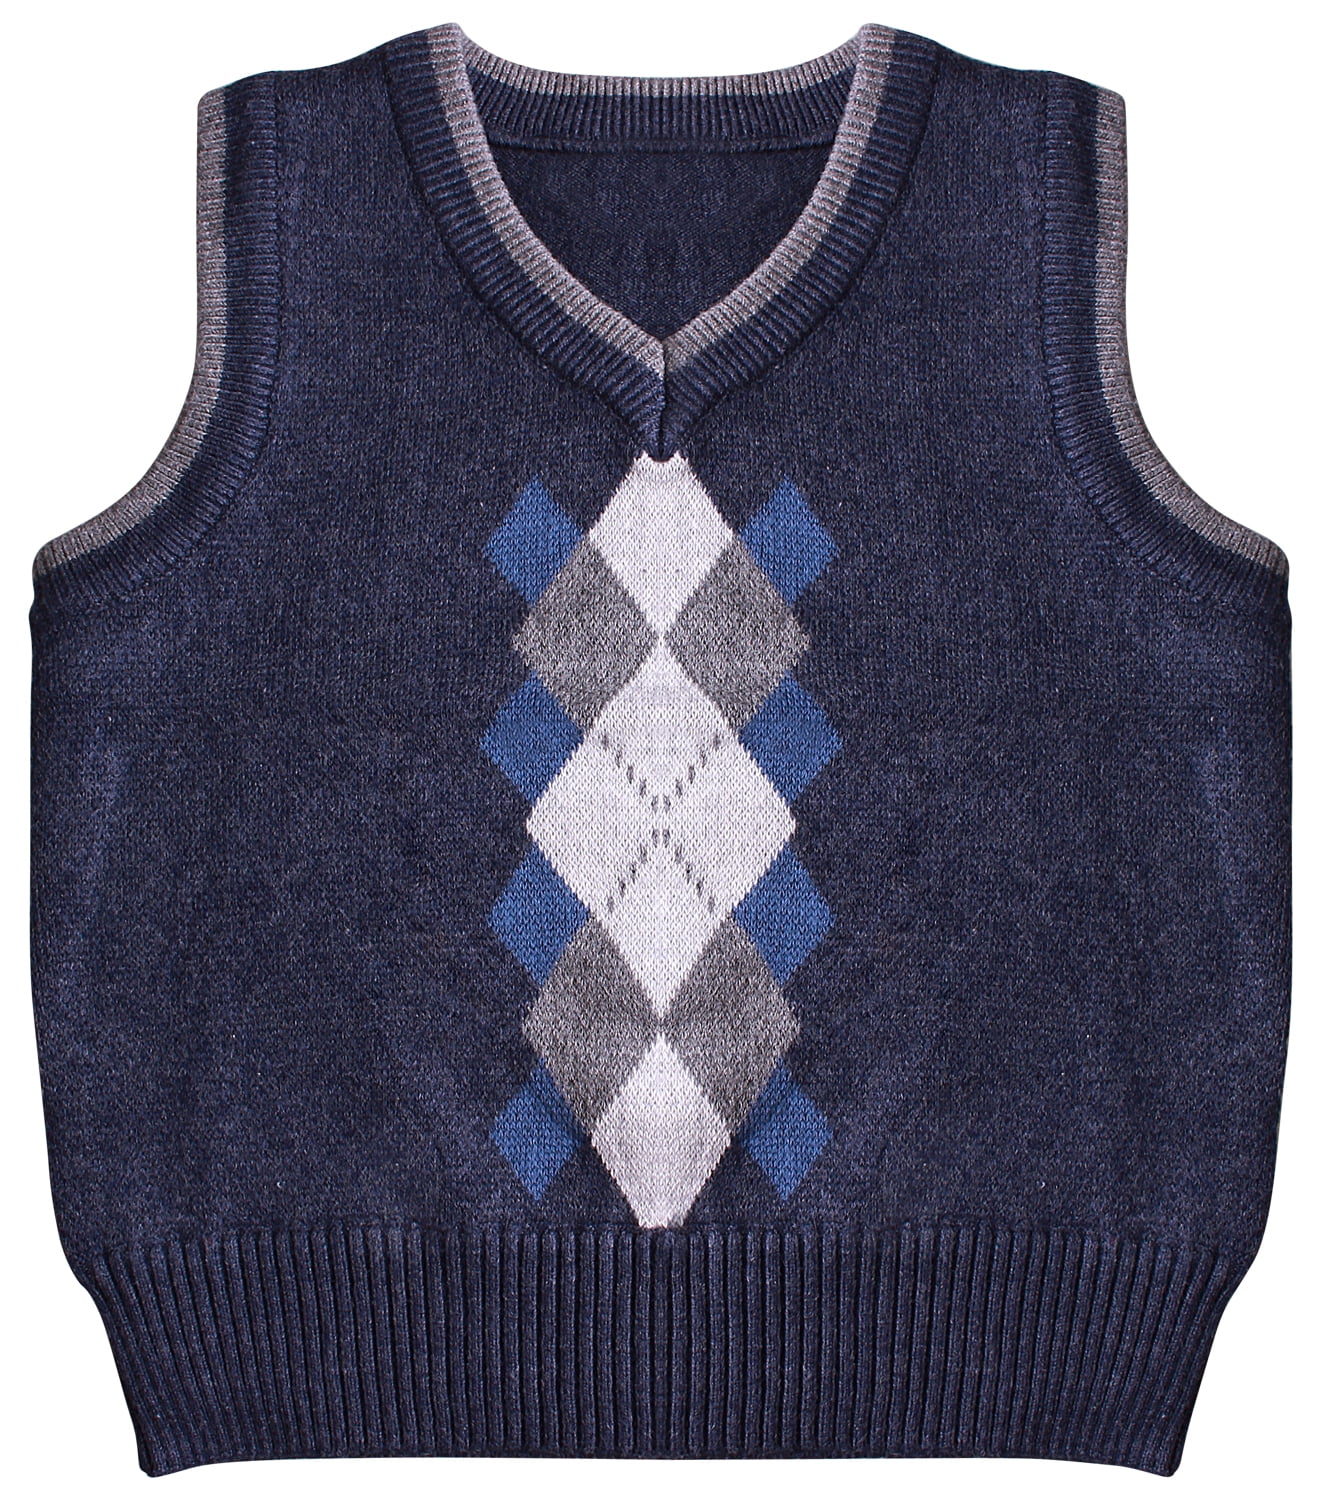 Sweater Vest Boys Navy Argyle Knit V Neck Pullover Kids Size 4 5 6 7 White New 